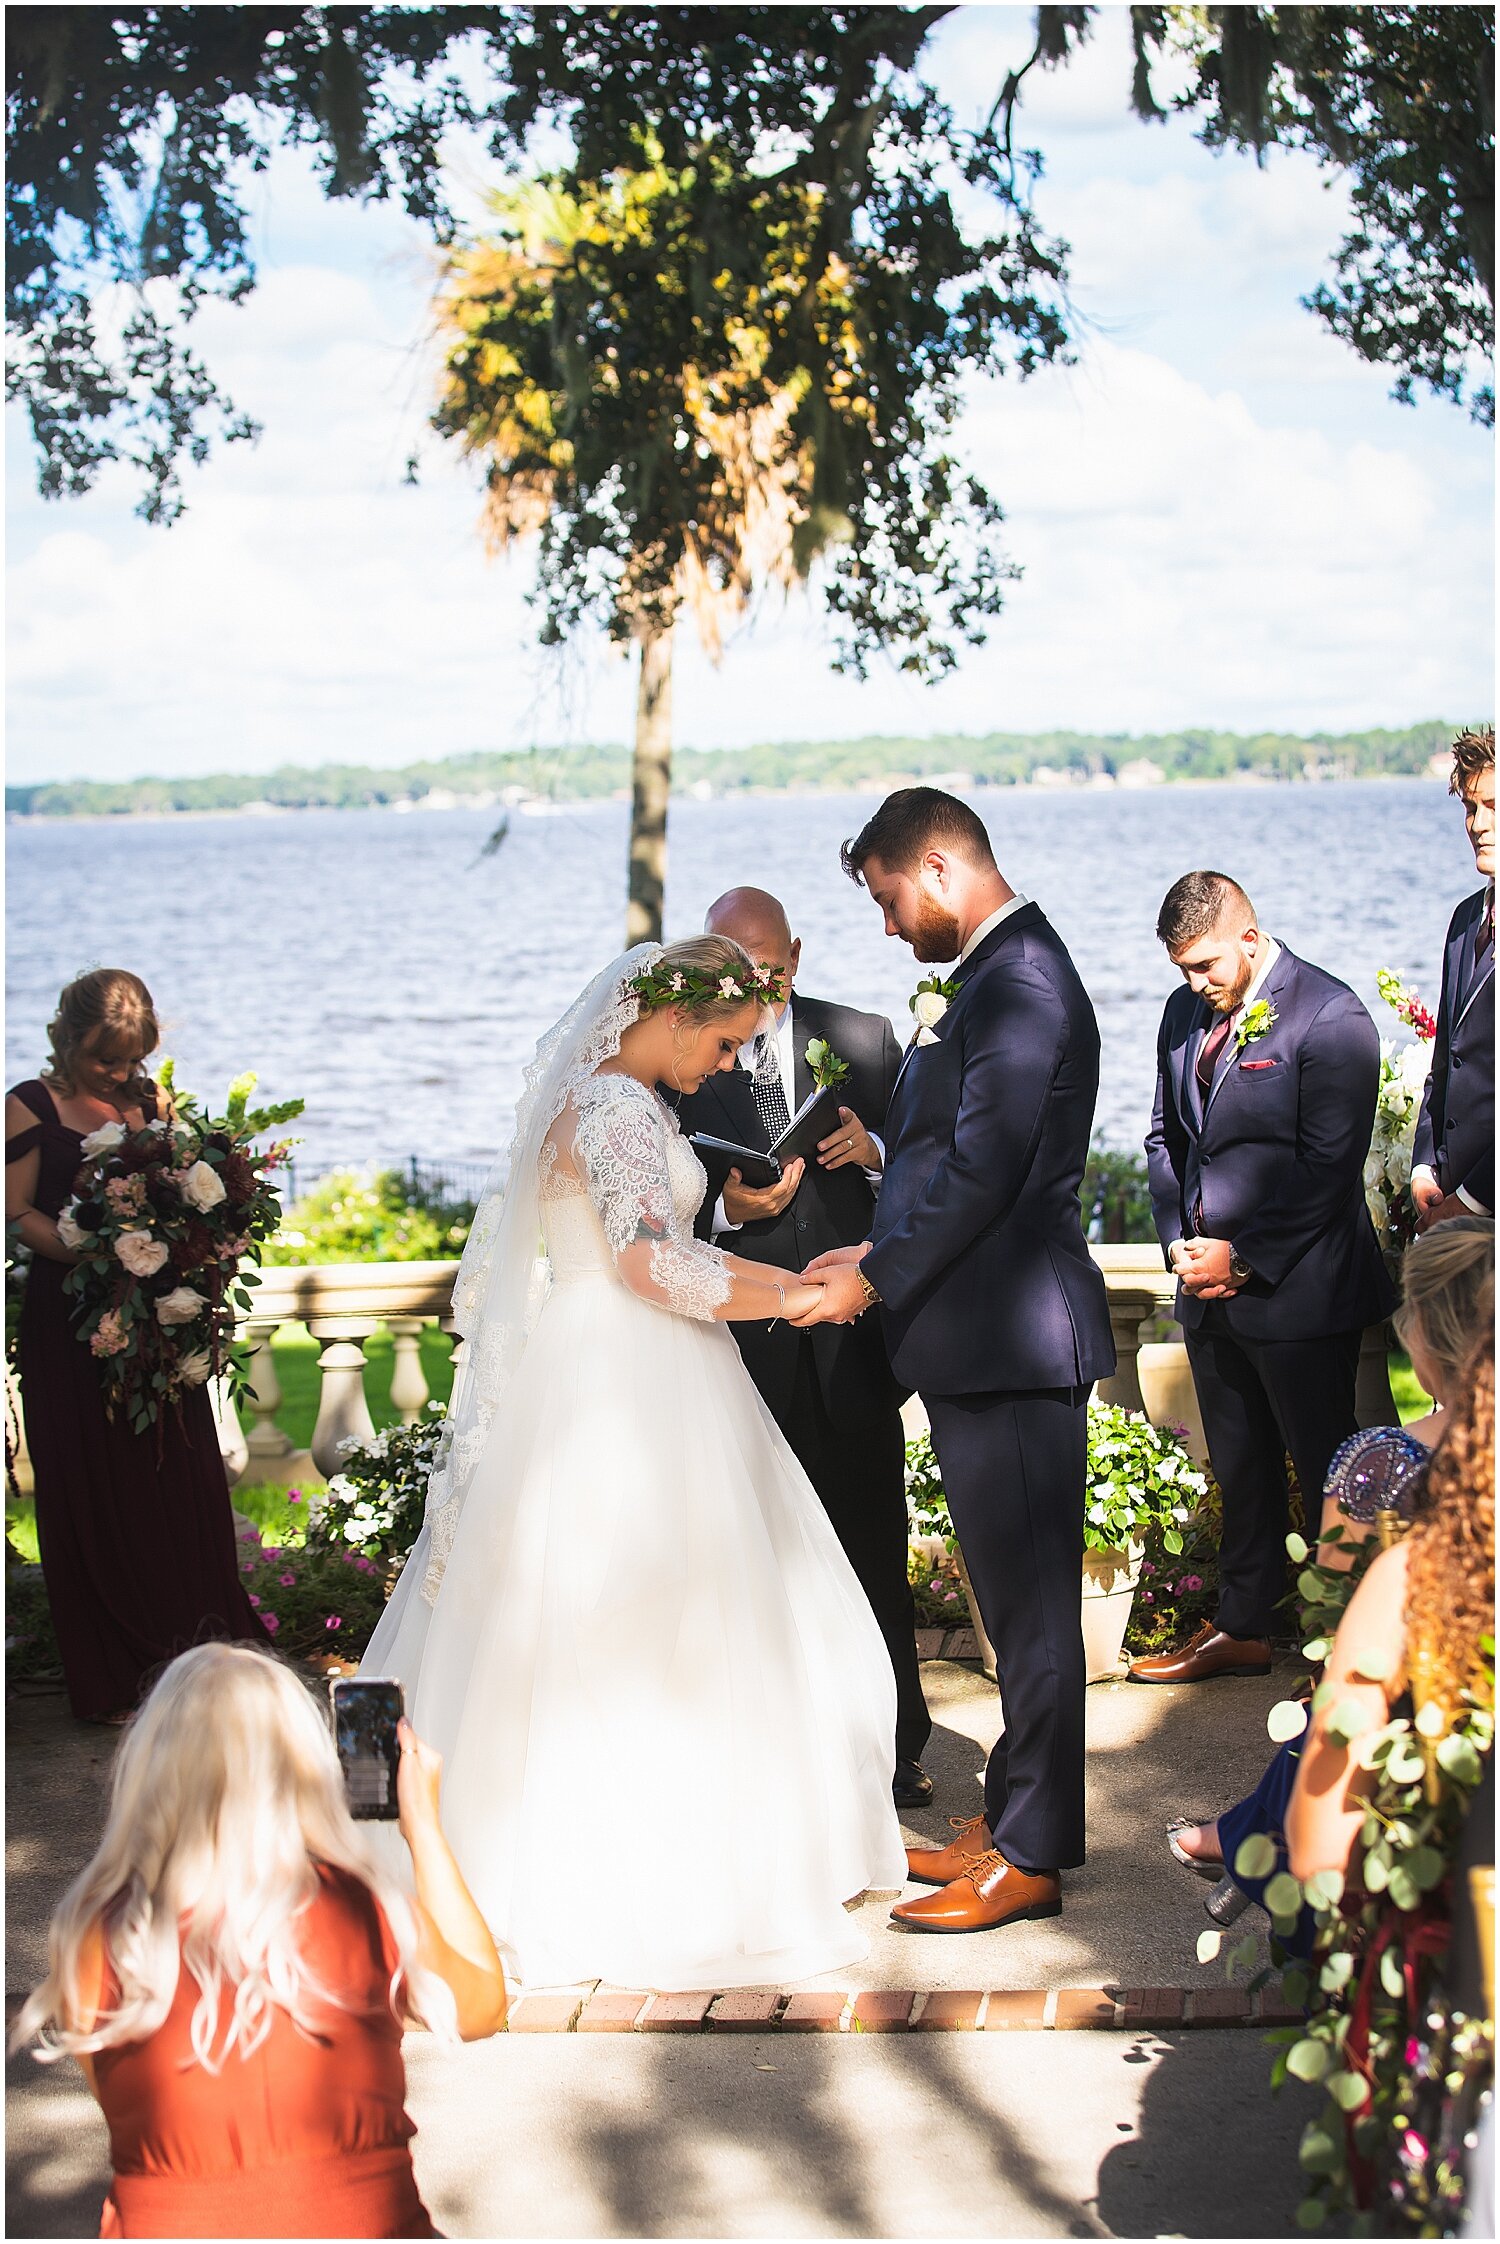  outdoor wedding ceremony in Jacksonville FL 